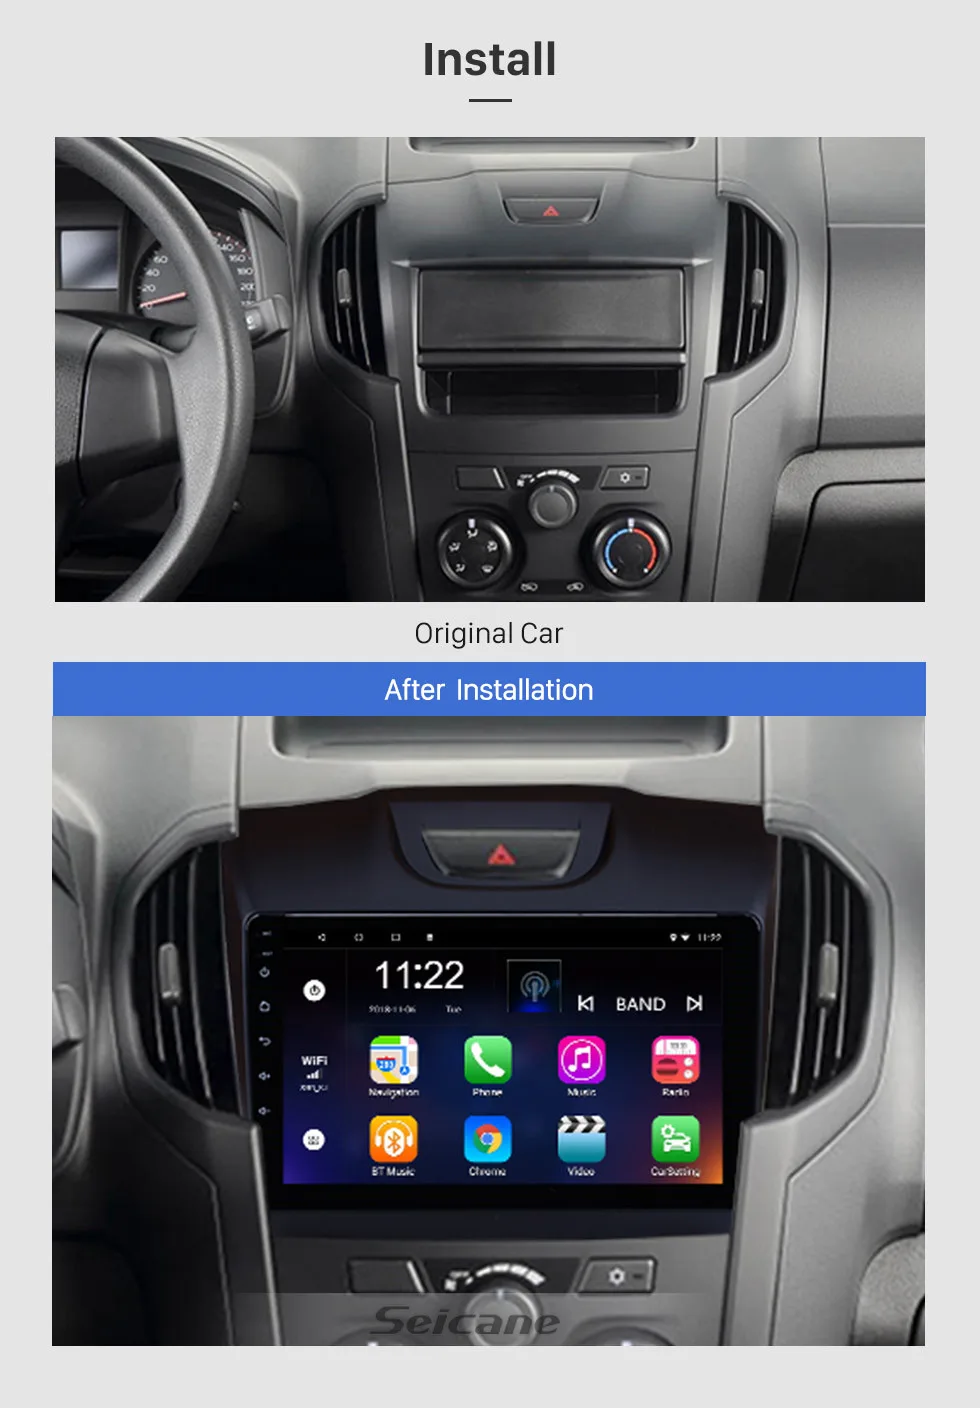 Seicane 9 дюймов Android 9,0 для Chevy Chevrolet S10- ISUZU D-Max автомобильный Радио gps навигатор плеер Поддержка камеры заднего вида